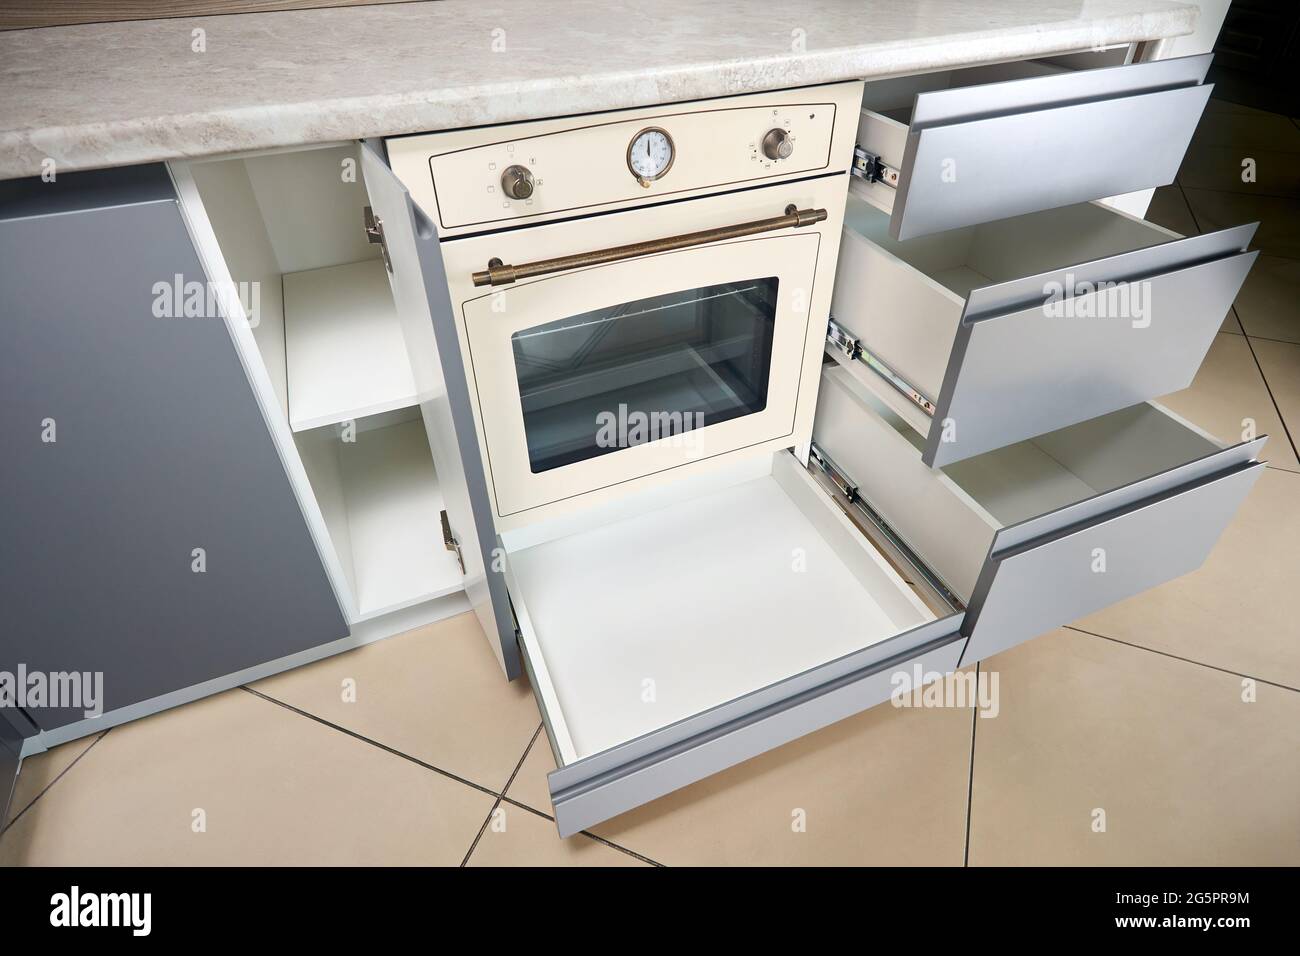 Soluzione per posizionare utensili da cucina in una cucina moderna.  Scaffalature cassetti estraibili orizzontali in armadio per utensili da  cucina sotto uven e Foto stock - Alamy